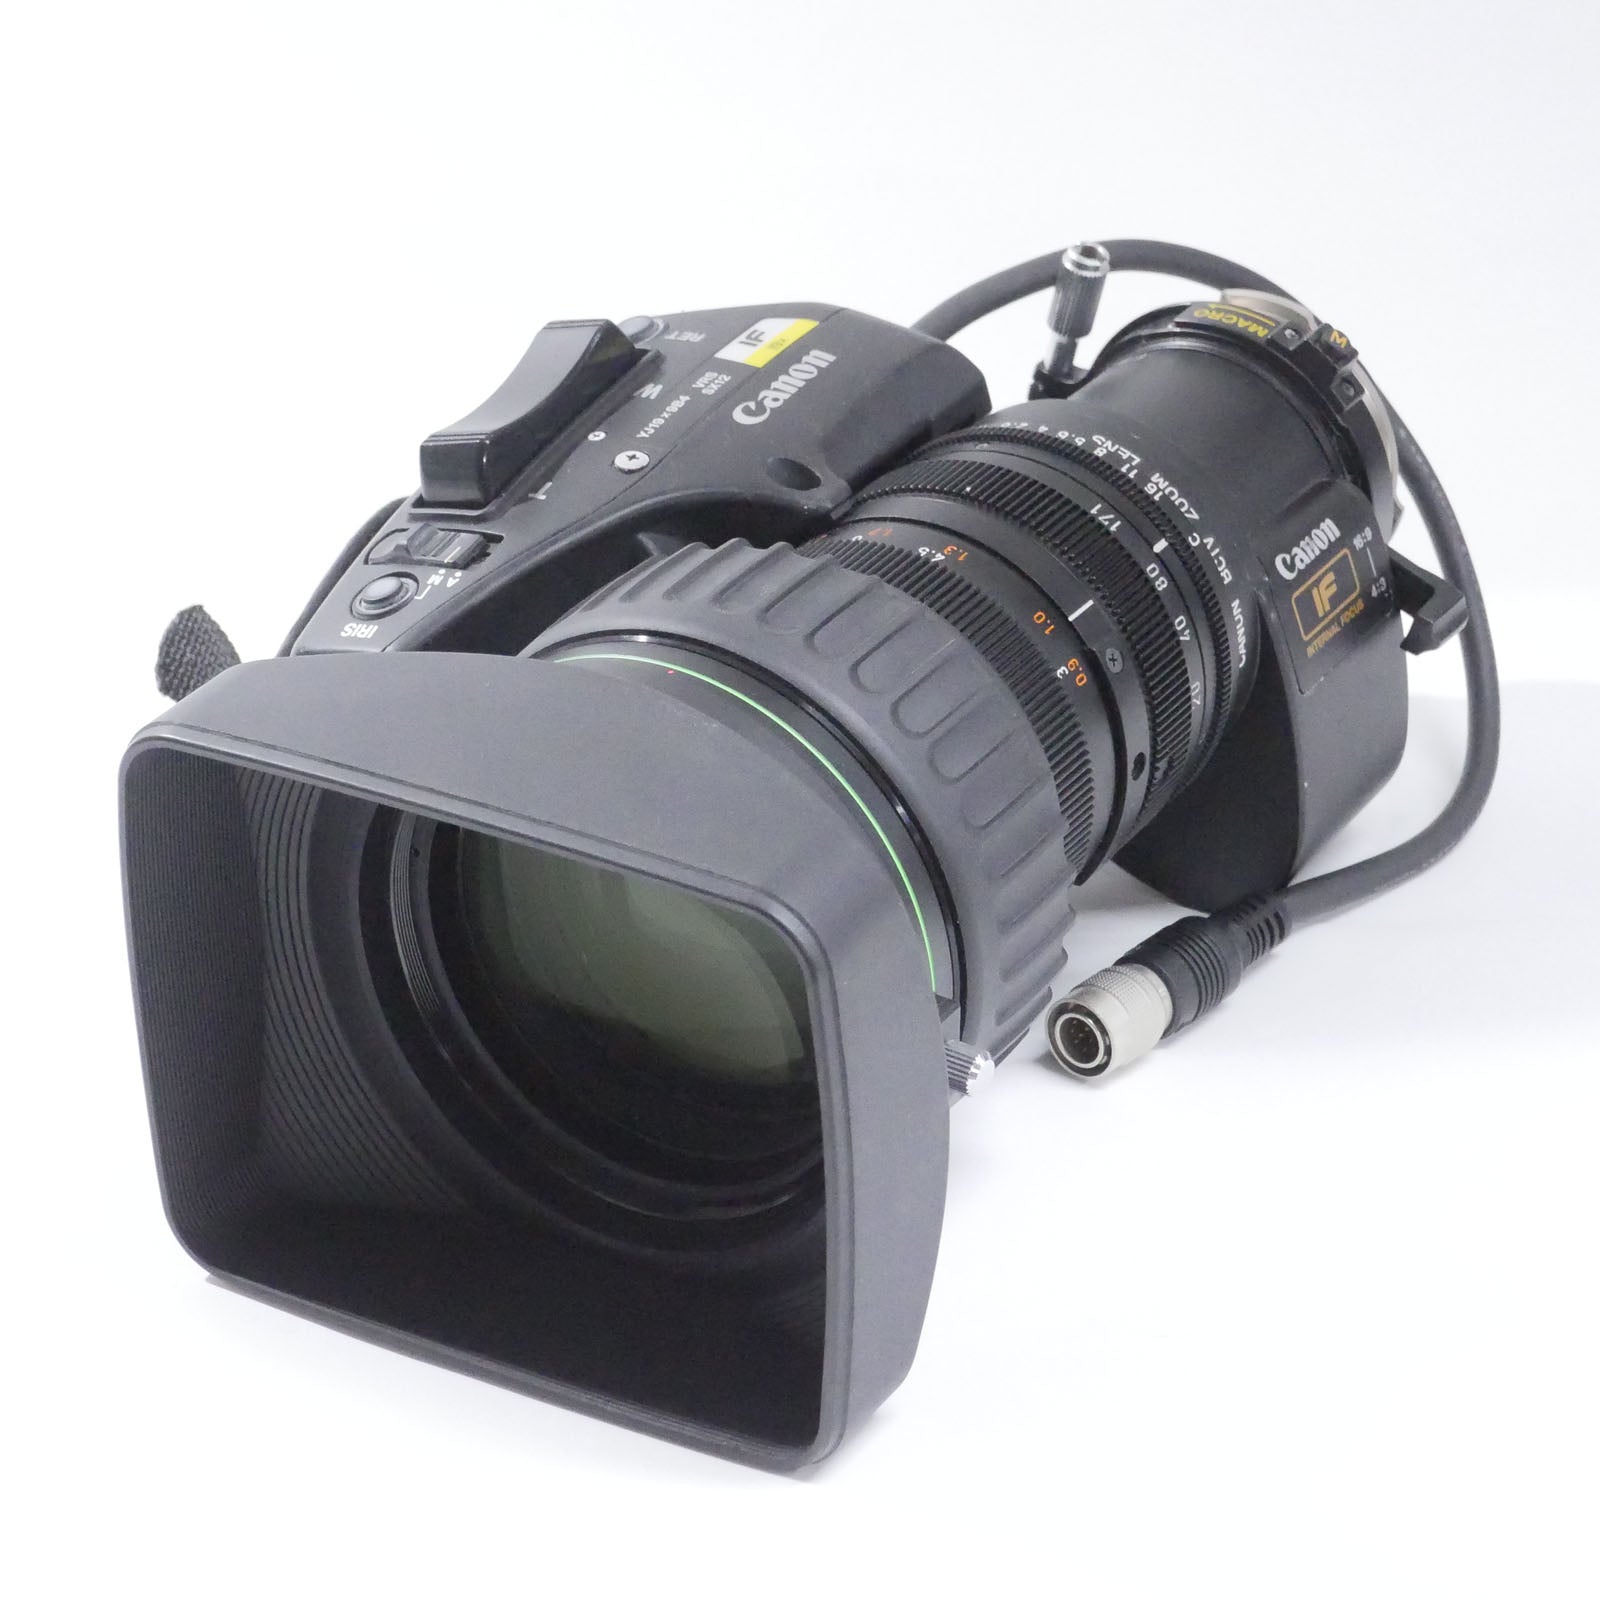 Canon(キヤノン) 業務用SDズームレンズ YJ19x9B4 VRS SX12 ジャンク品